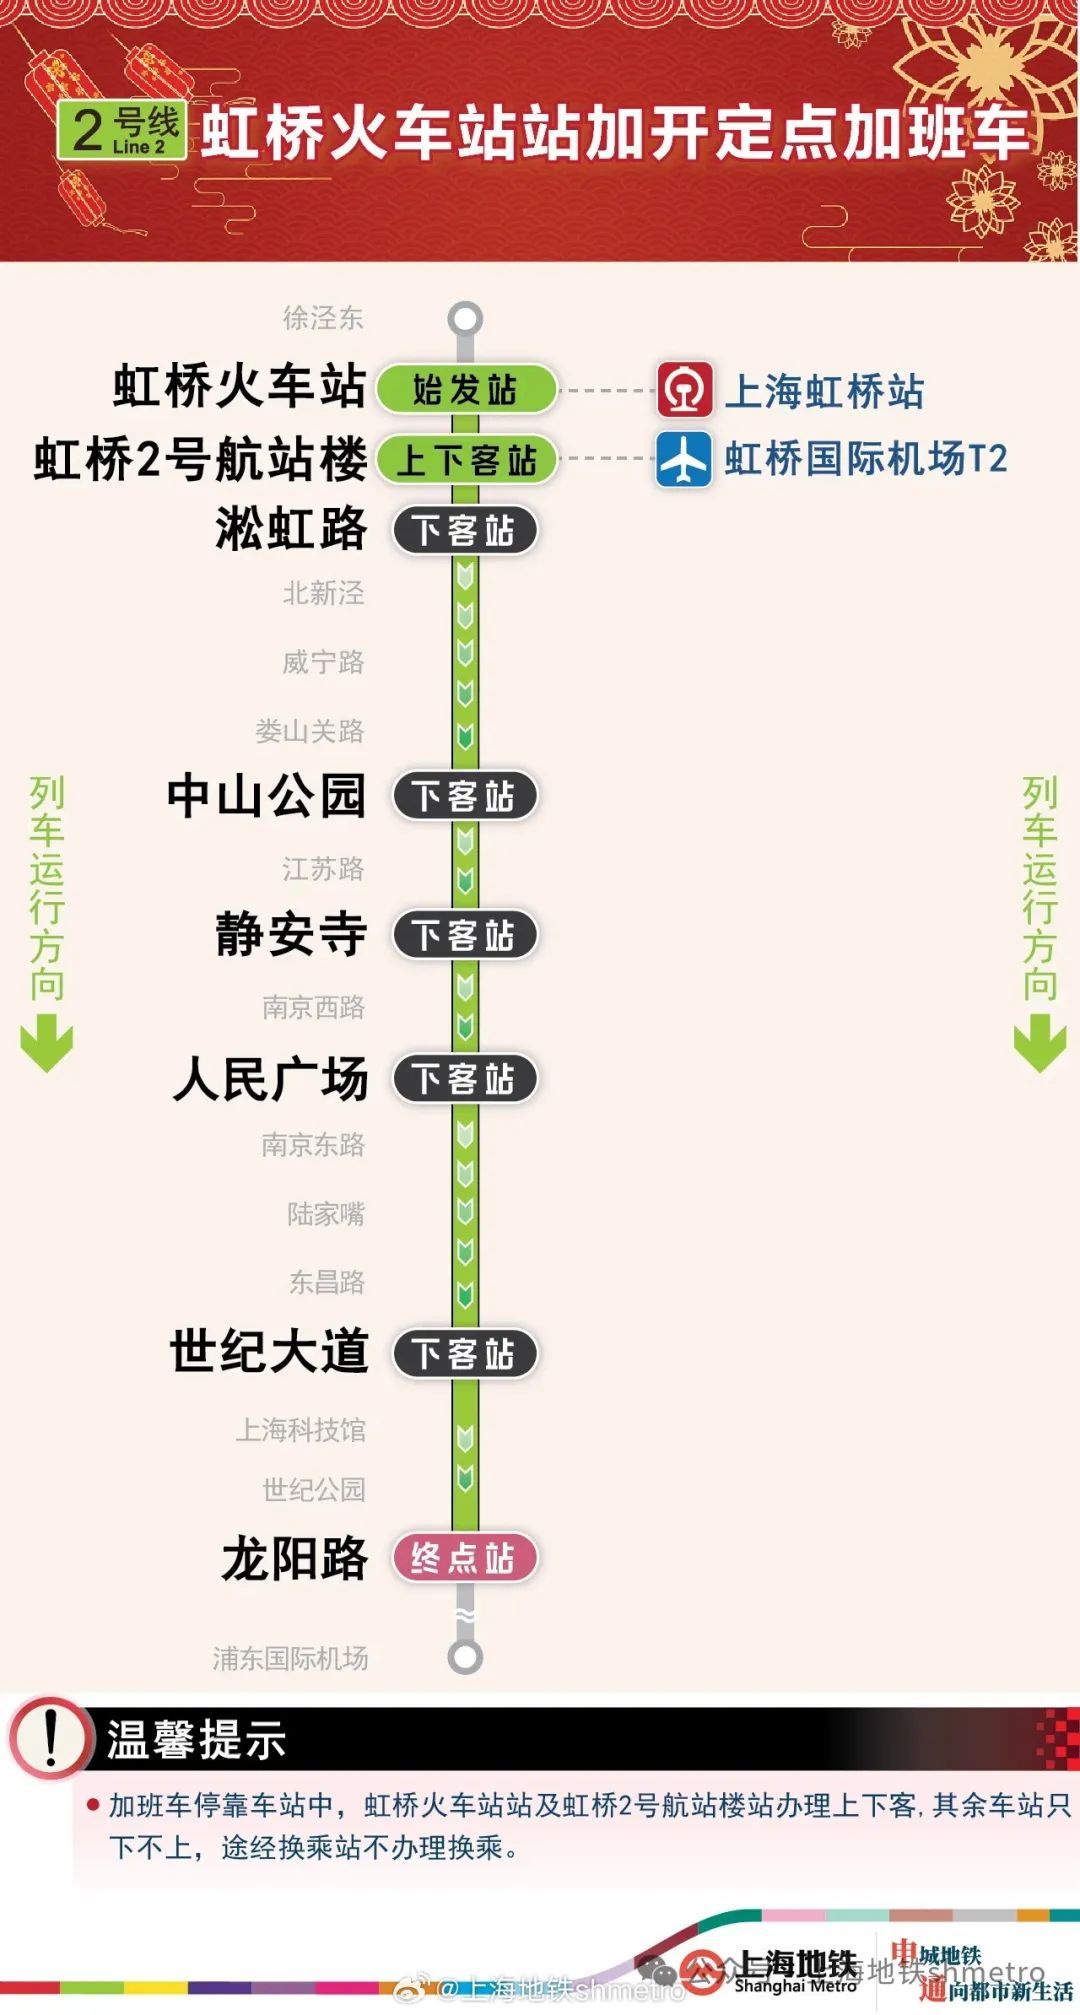 2月20日地铁虹桥火车站10号线加开至23时30分2号线加开至21日2时